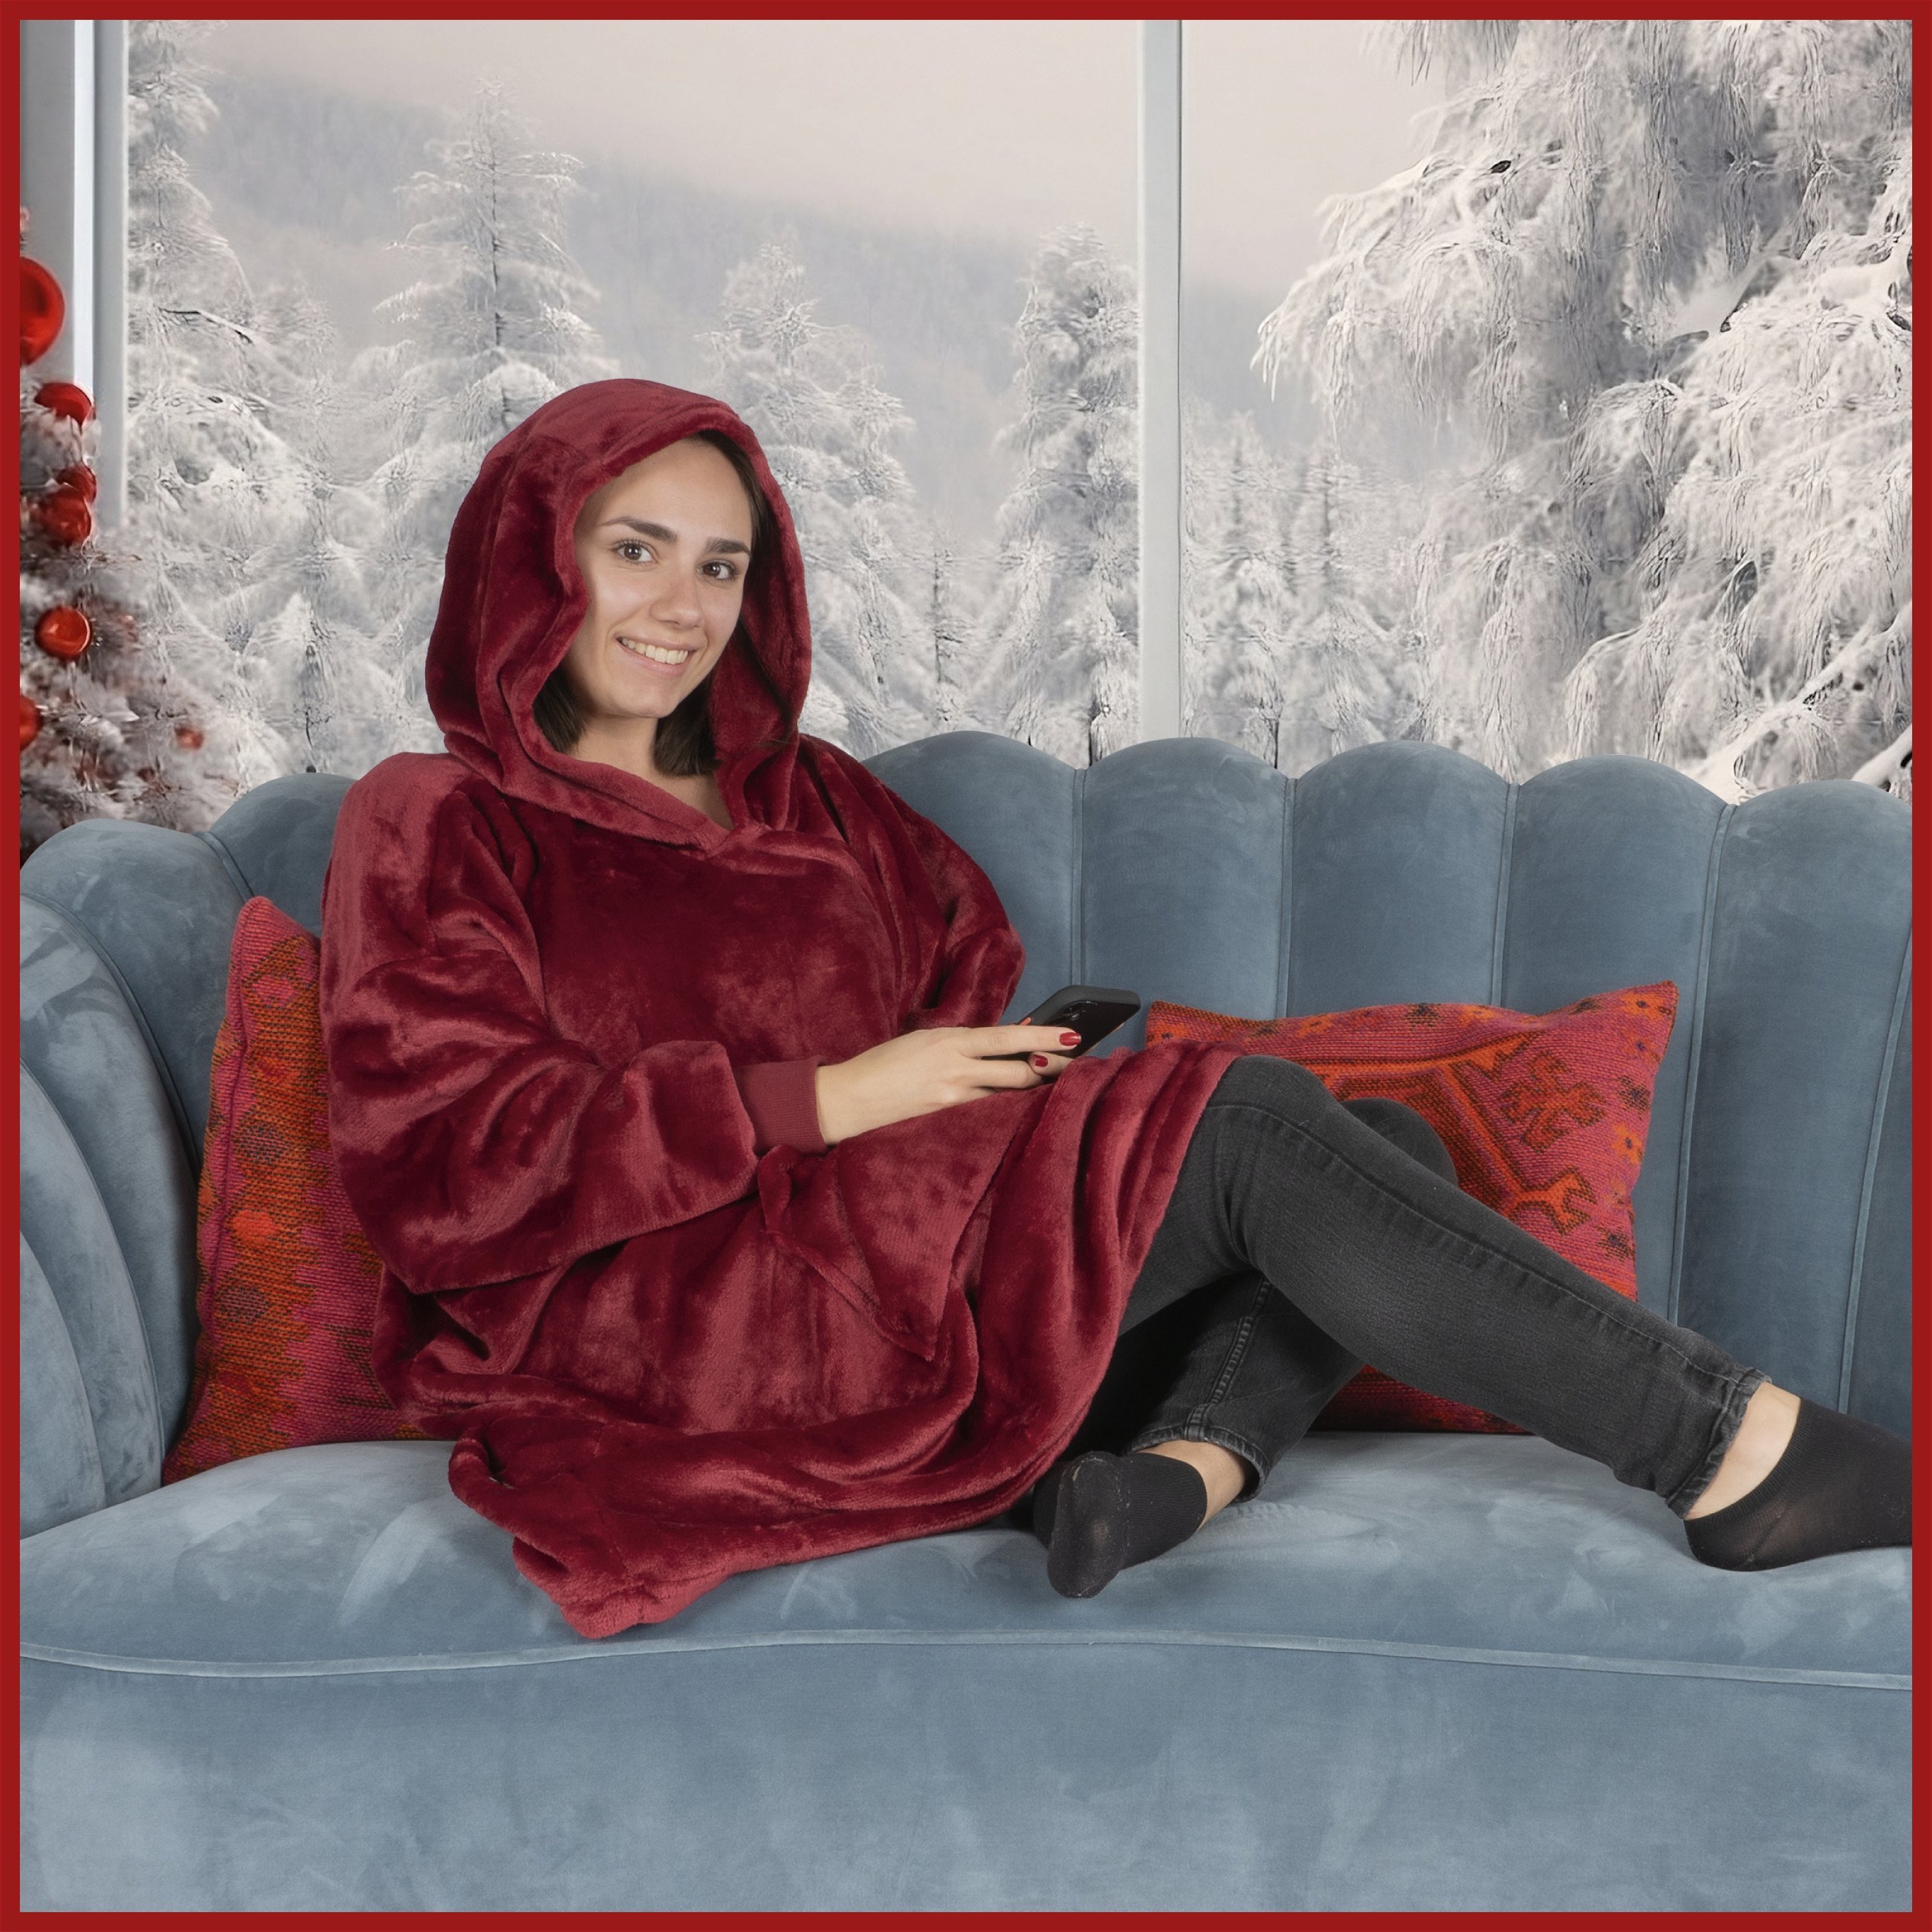 Maglione Snuggle, coperta con cappuccio Snuggle, felpa con cappuccio oversize donna, felpa con cappuccio uomo, felpa con cappuccio 104x102 cm rosso granato